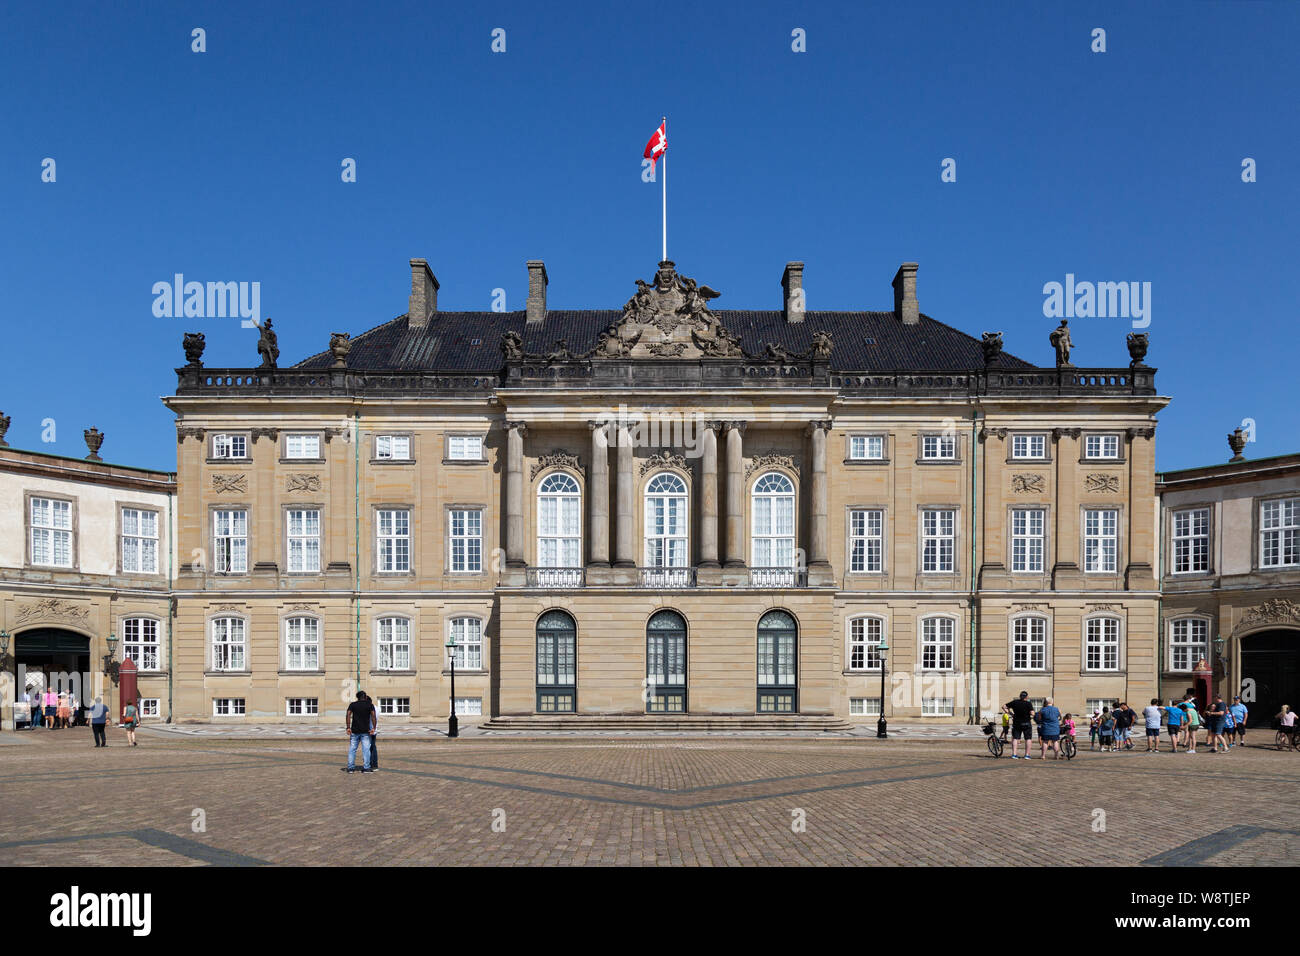 Le Palais d'Amalienborg Copenhagen Danemark - Palais du xviie siècle, le foyer de la famille royale danoise Copenhague Danemark Scandinavie Europe ; Banque D'Images